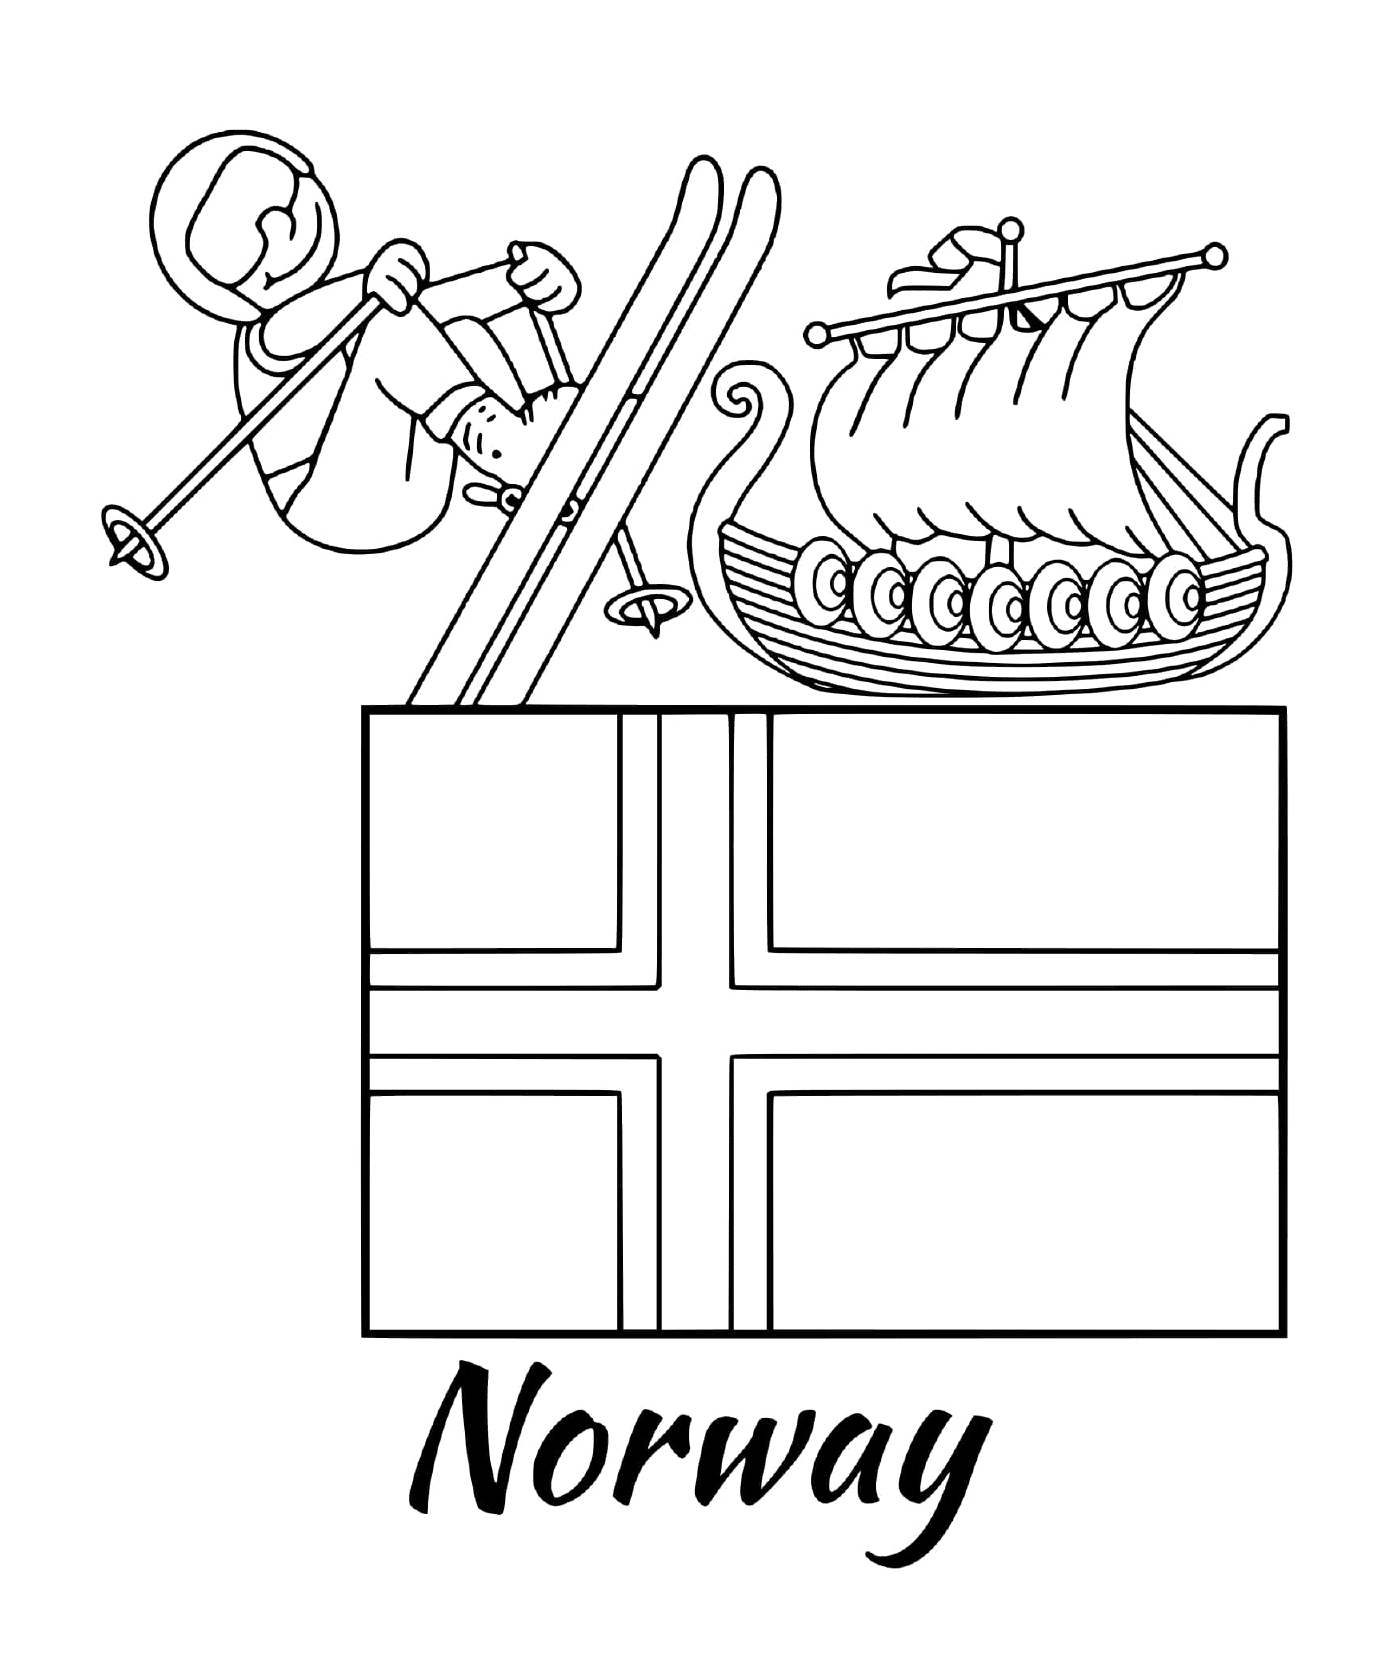  नार्वे का फ्लैग, बहुमोल 